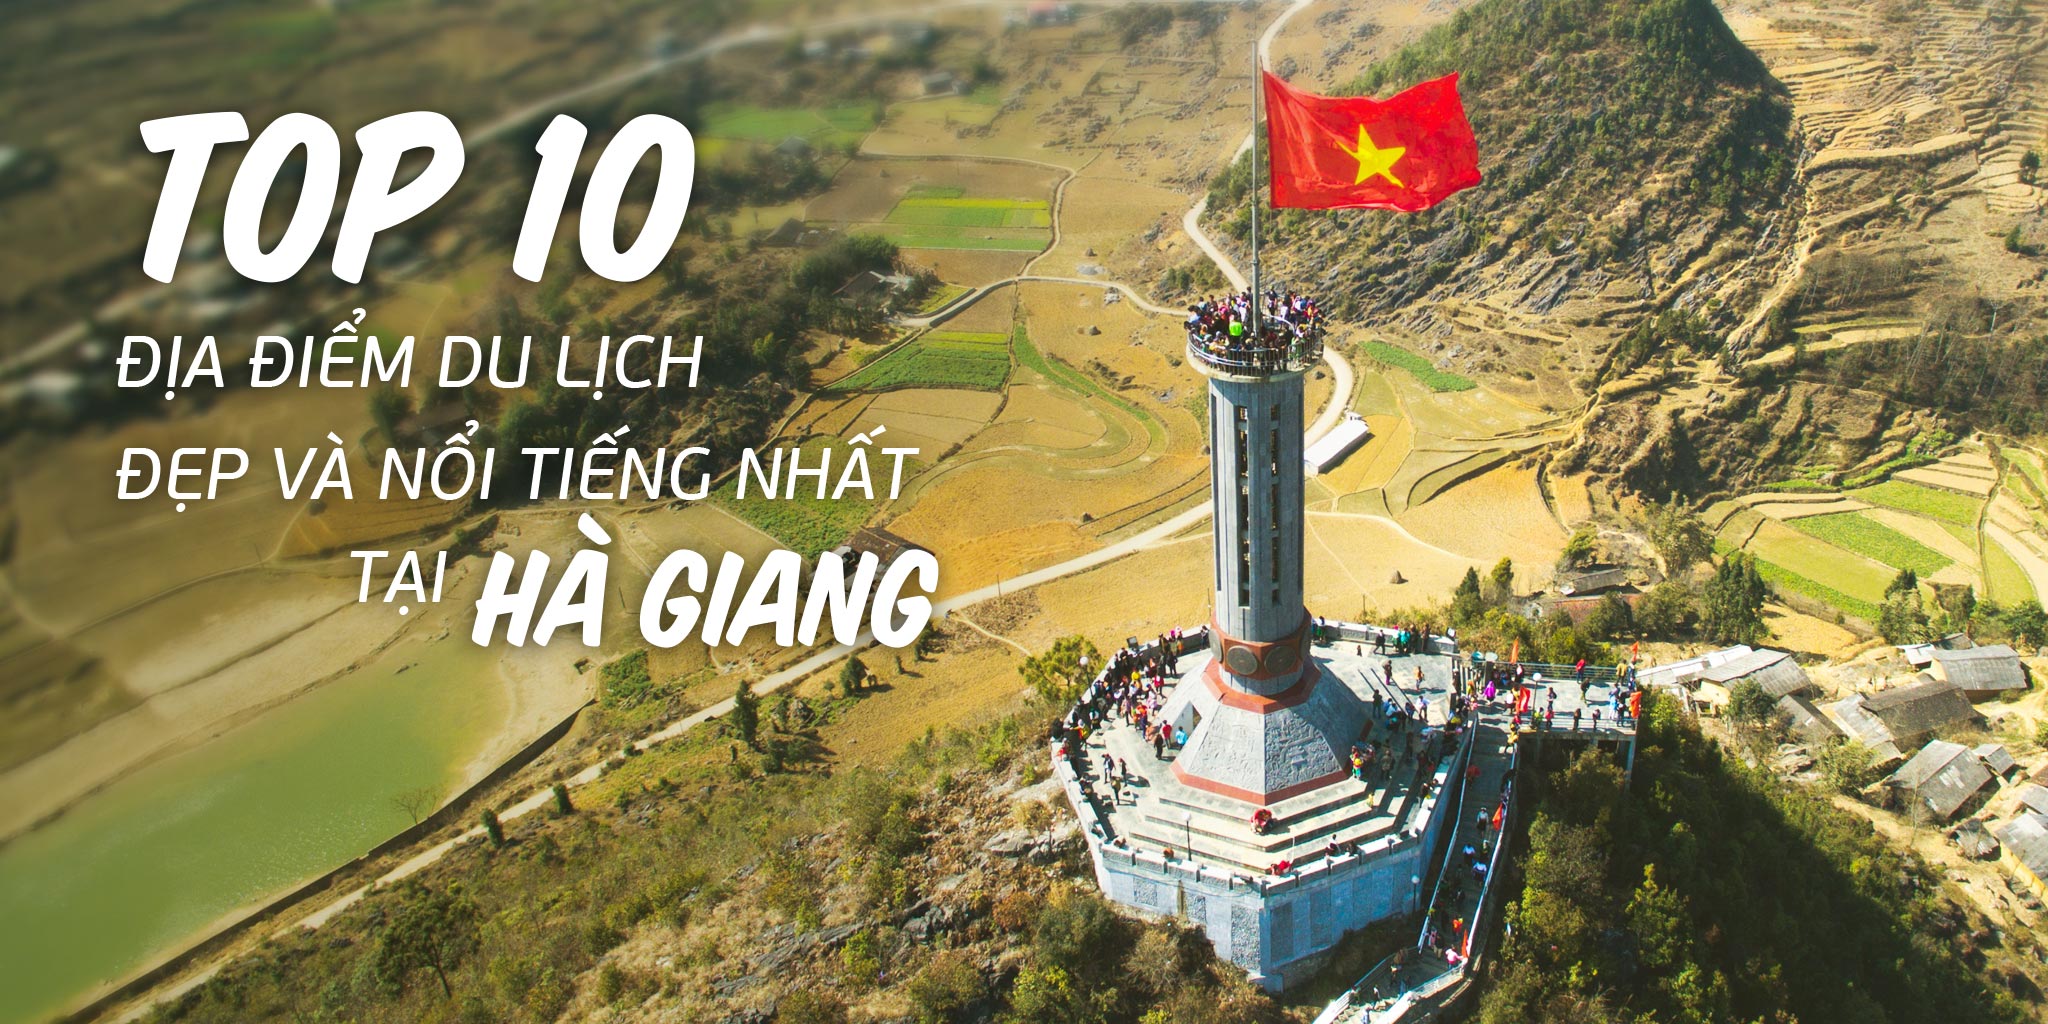 Top 10 địa điểm du lịch đẹp nổi tiếng nhất Hà Giang